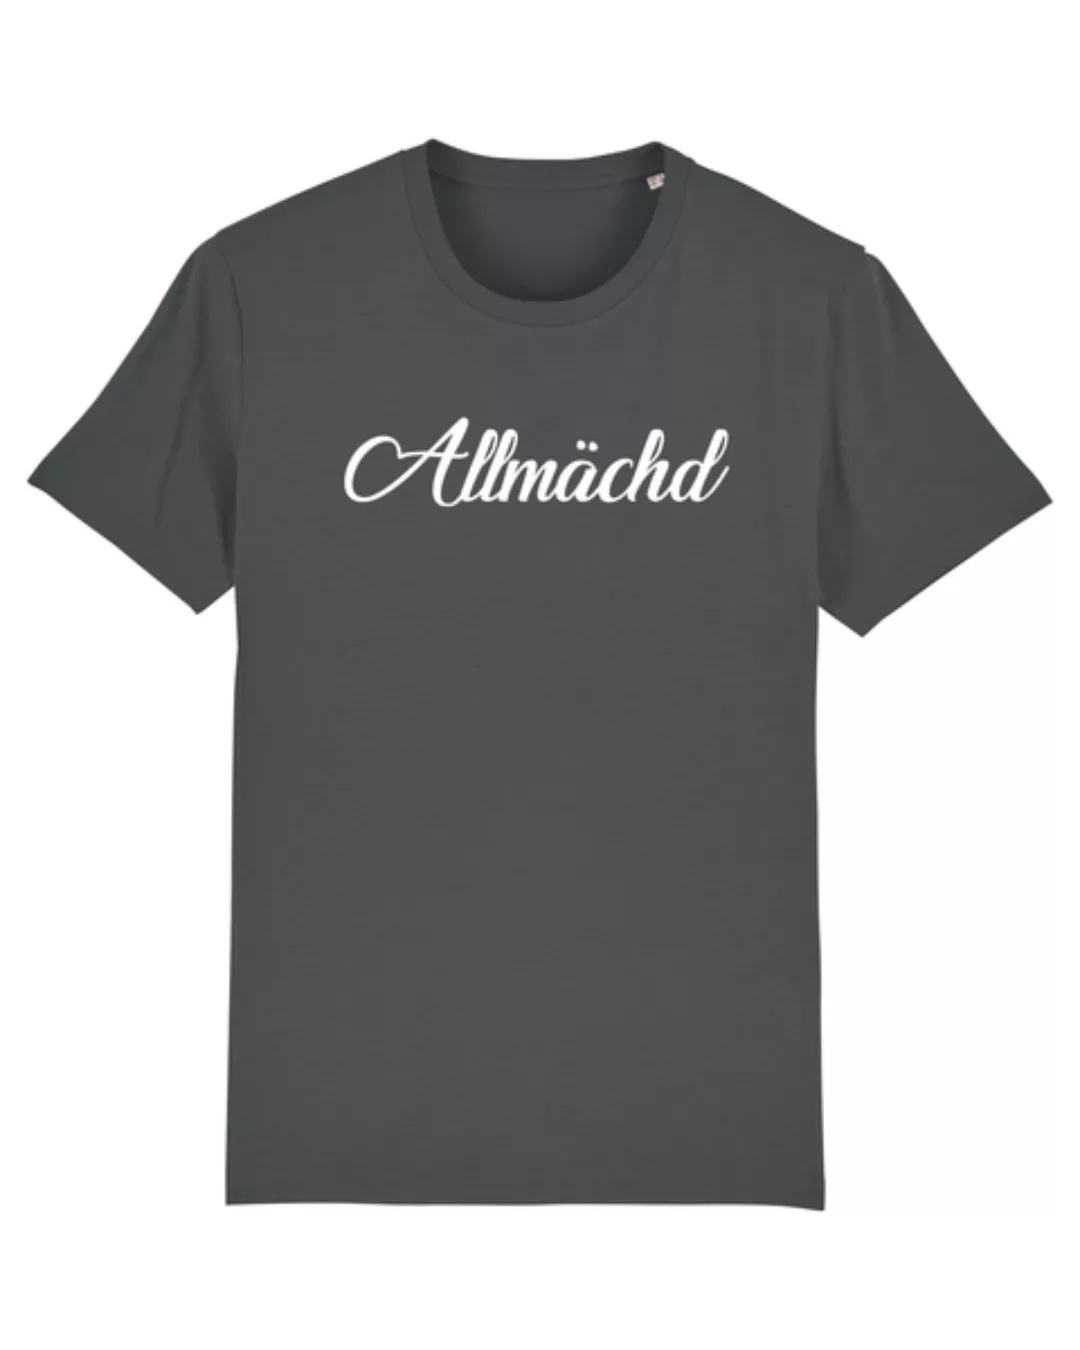 Allmächd | T-shirt Herren günstig online kaufen